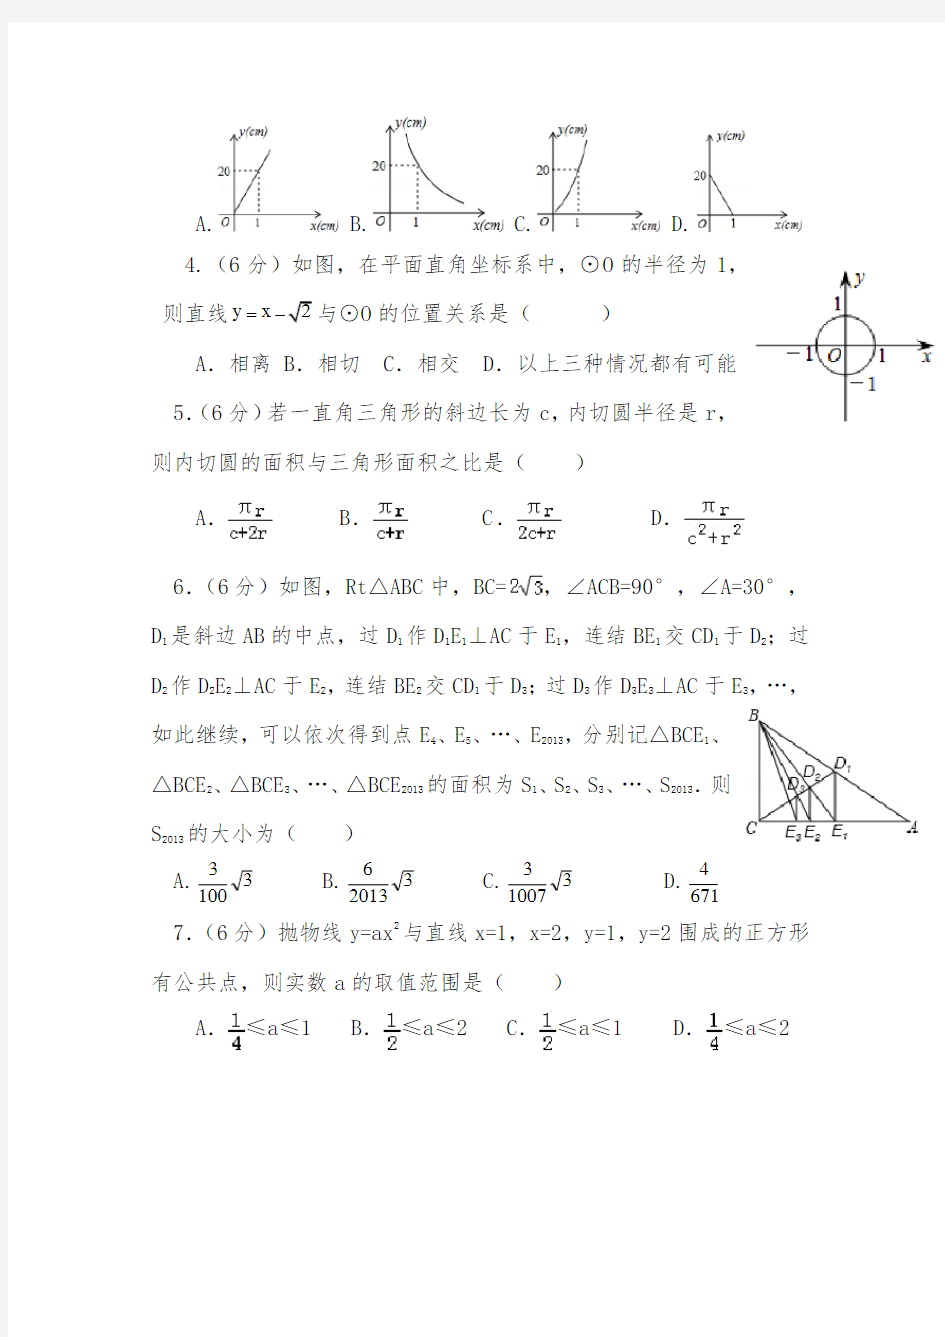 【2020-2021自招】安徽蚌埠第二中学初升高自主招生数学模拟试卷【4套】【含解析】